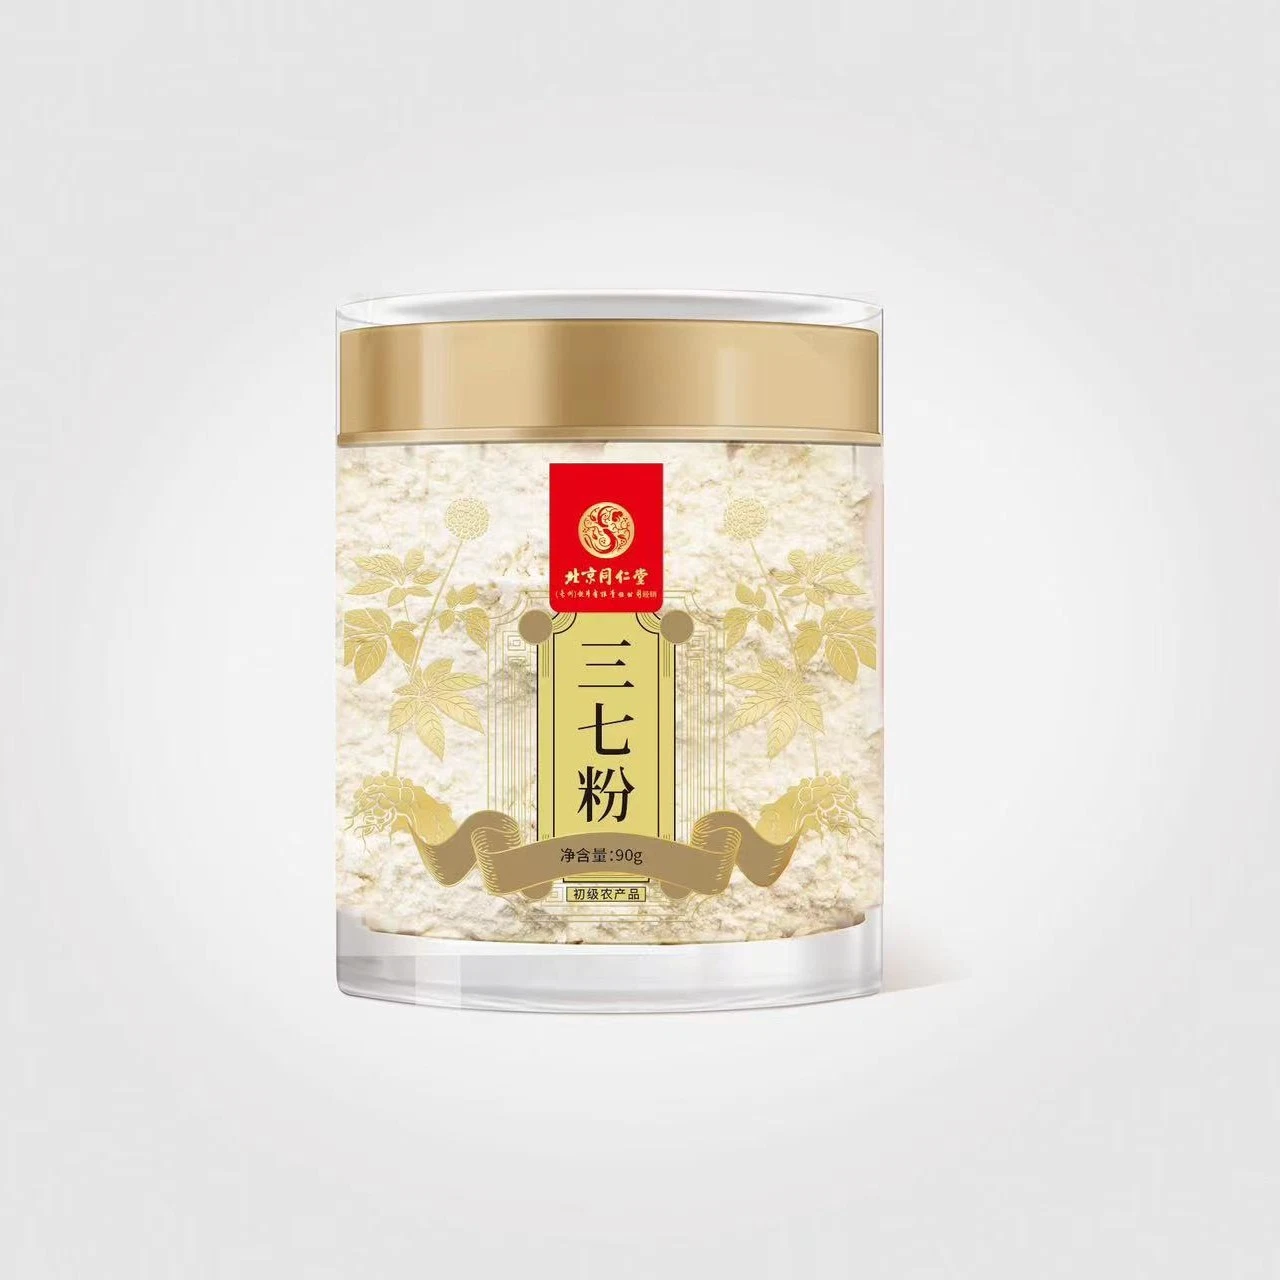 Paquete de Regalo de la lata Suplemento de aditivo de polvo de alimento de la salud Tonic chino Medicina de hierbas Sanchi